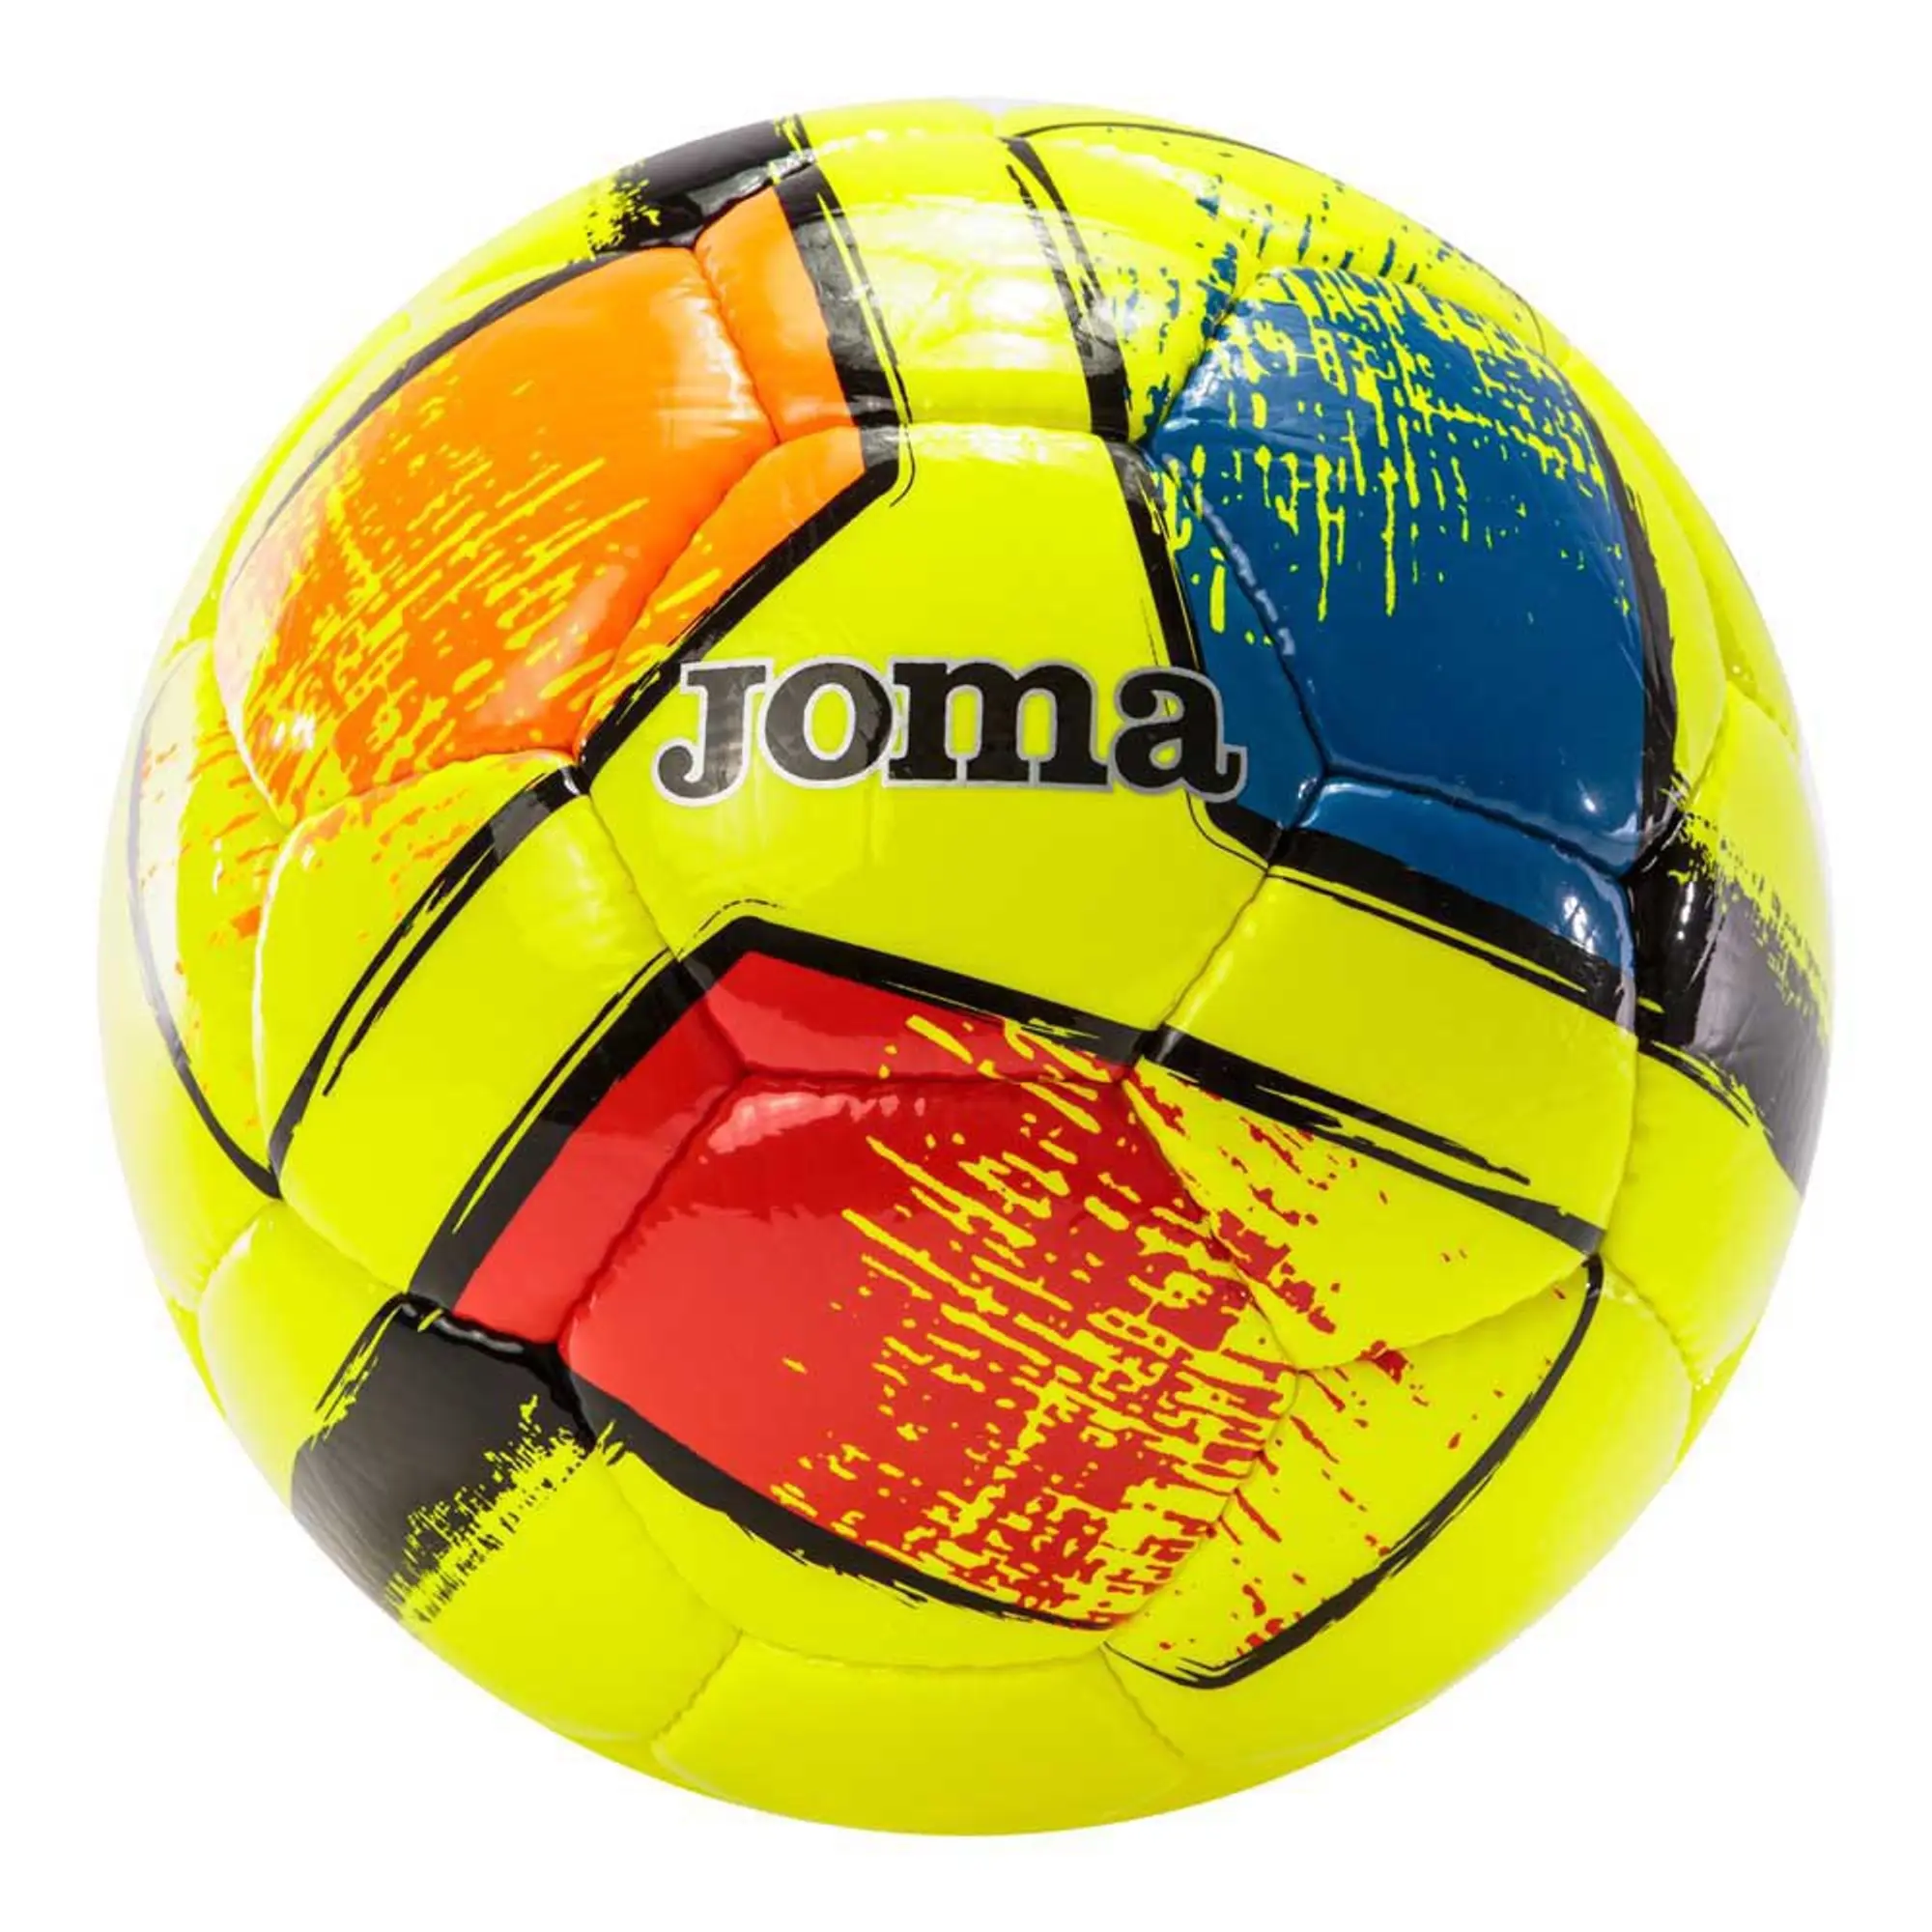 Joma Dali Ii Football Ball  - Yellow